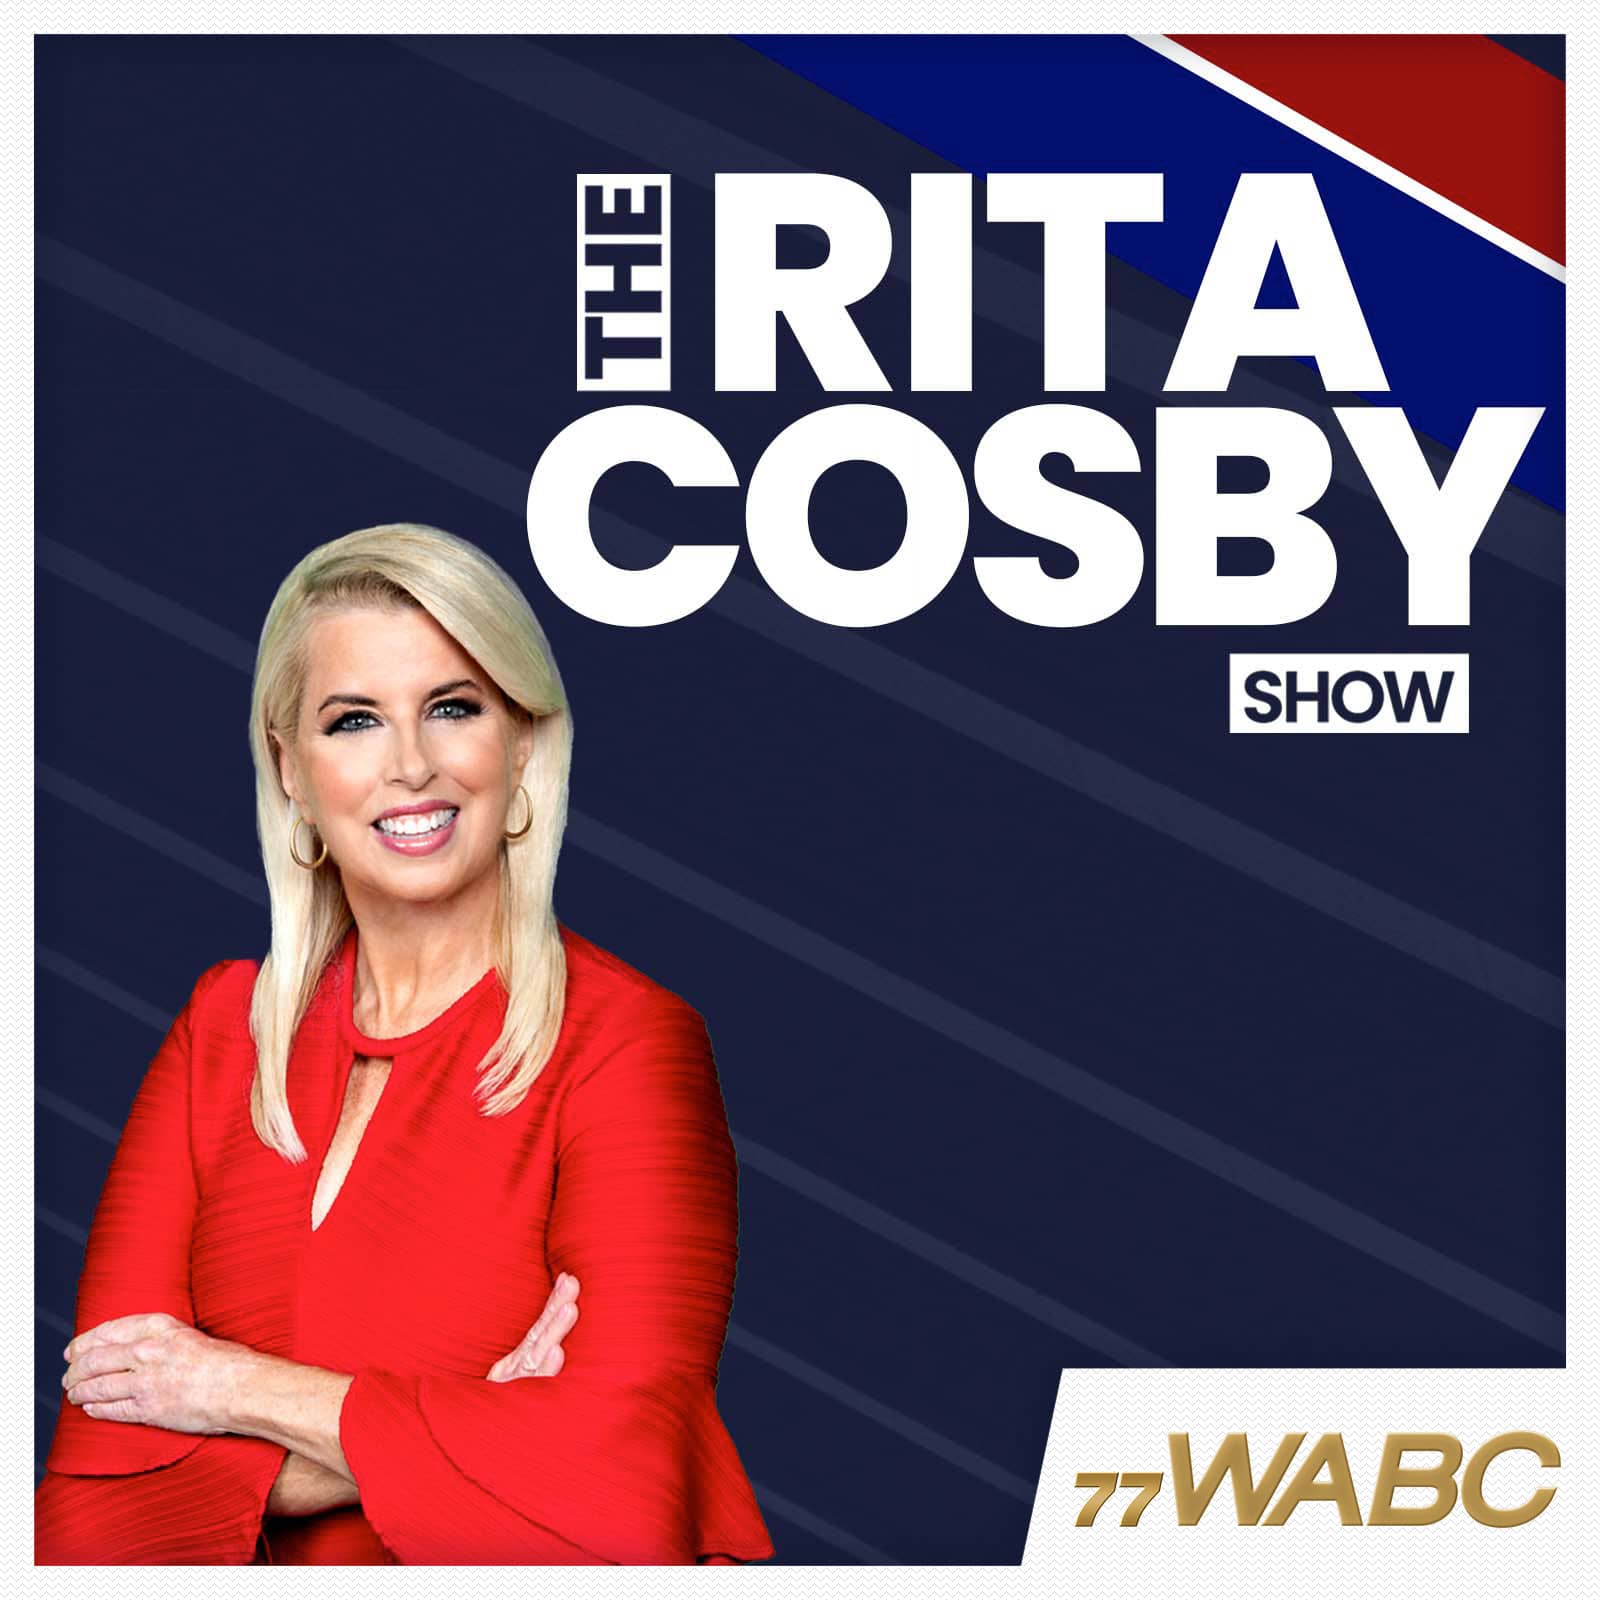 rita-cosby-podcast-new-logo-343